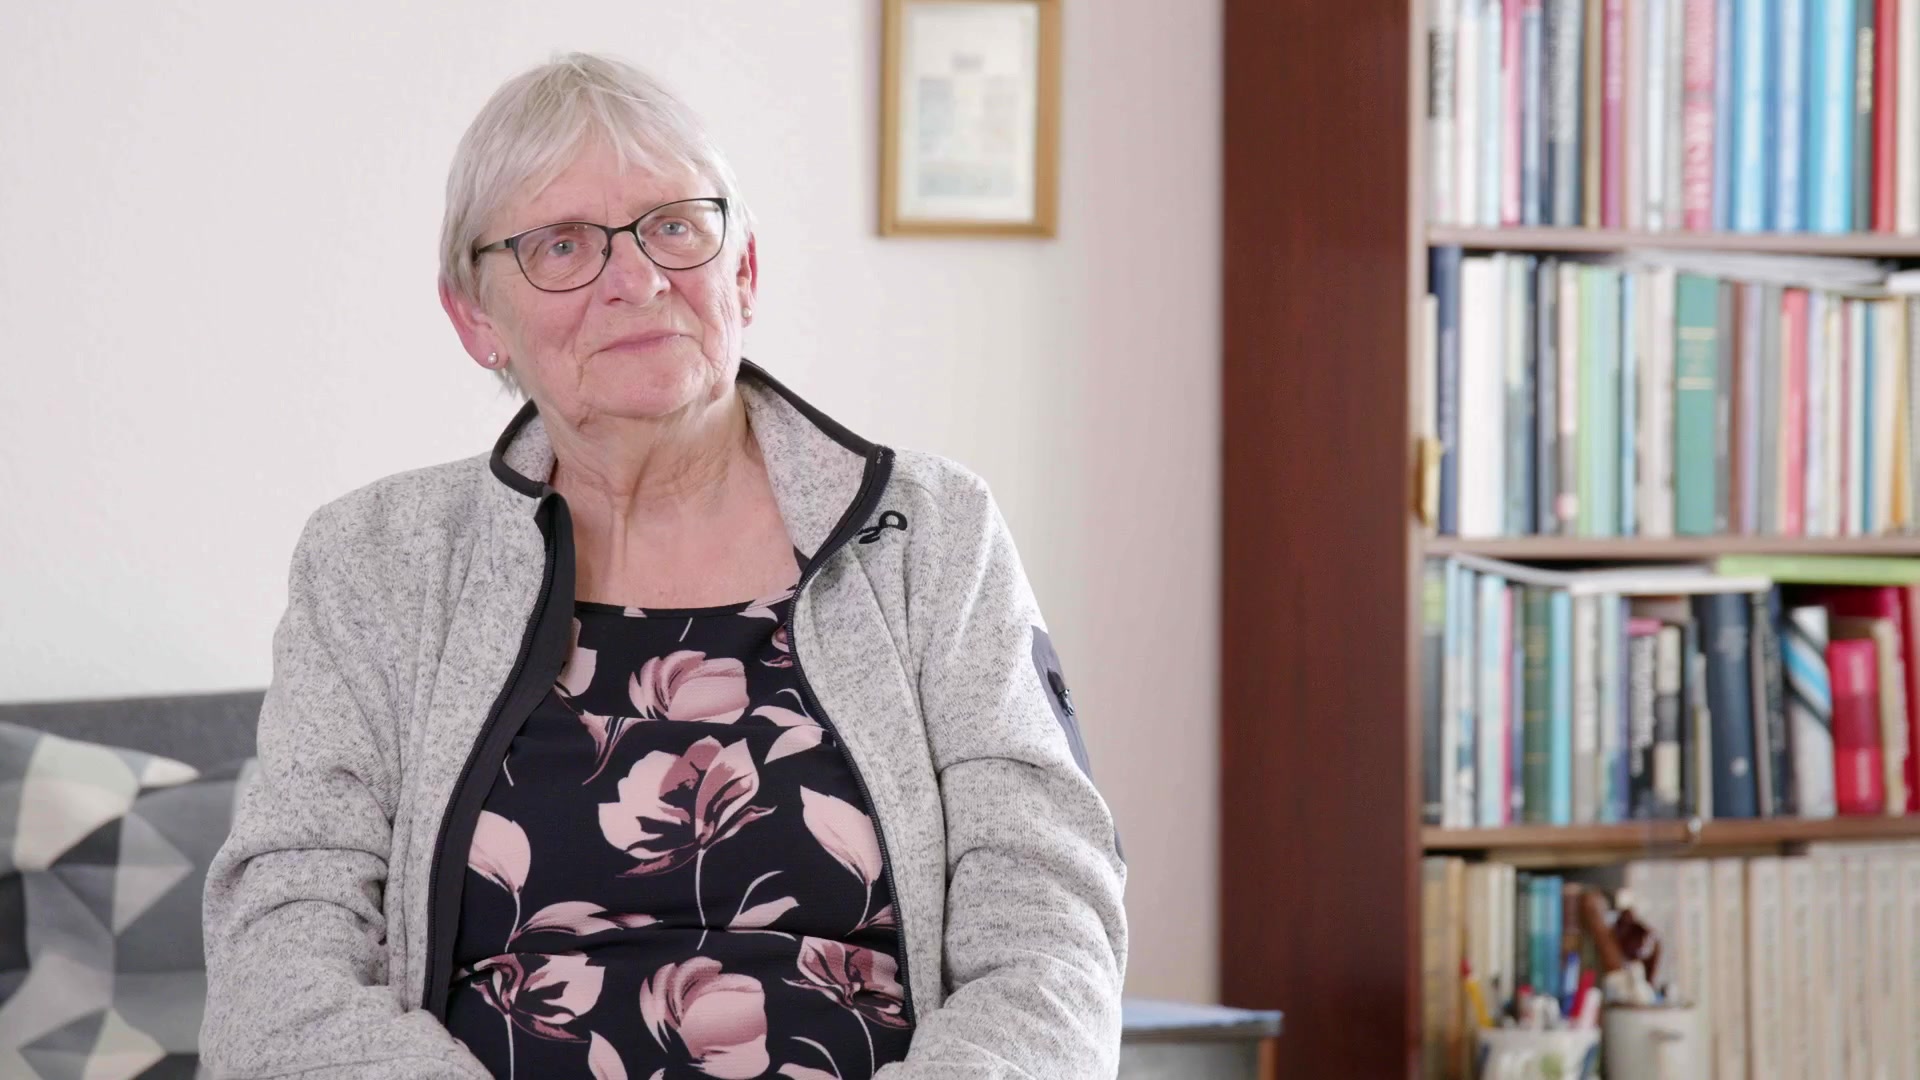 Klik for at se videoen "Livet som senior – Annette Ilsøe"